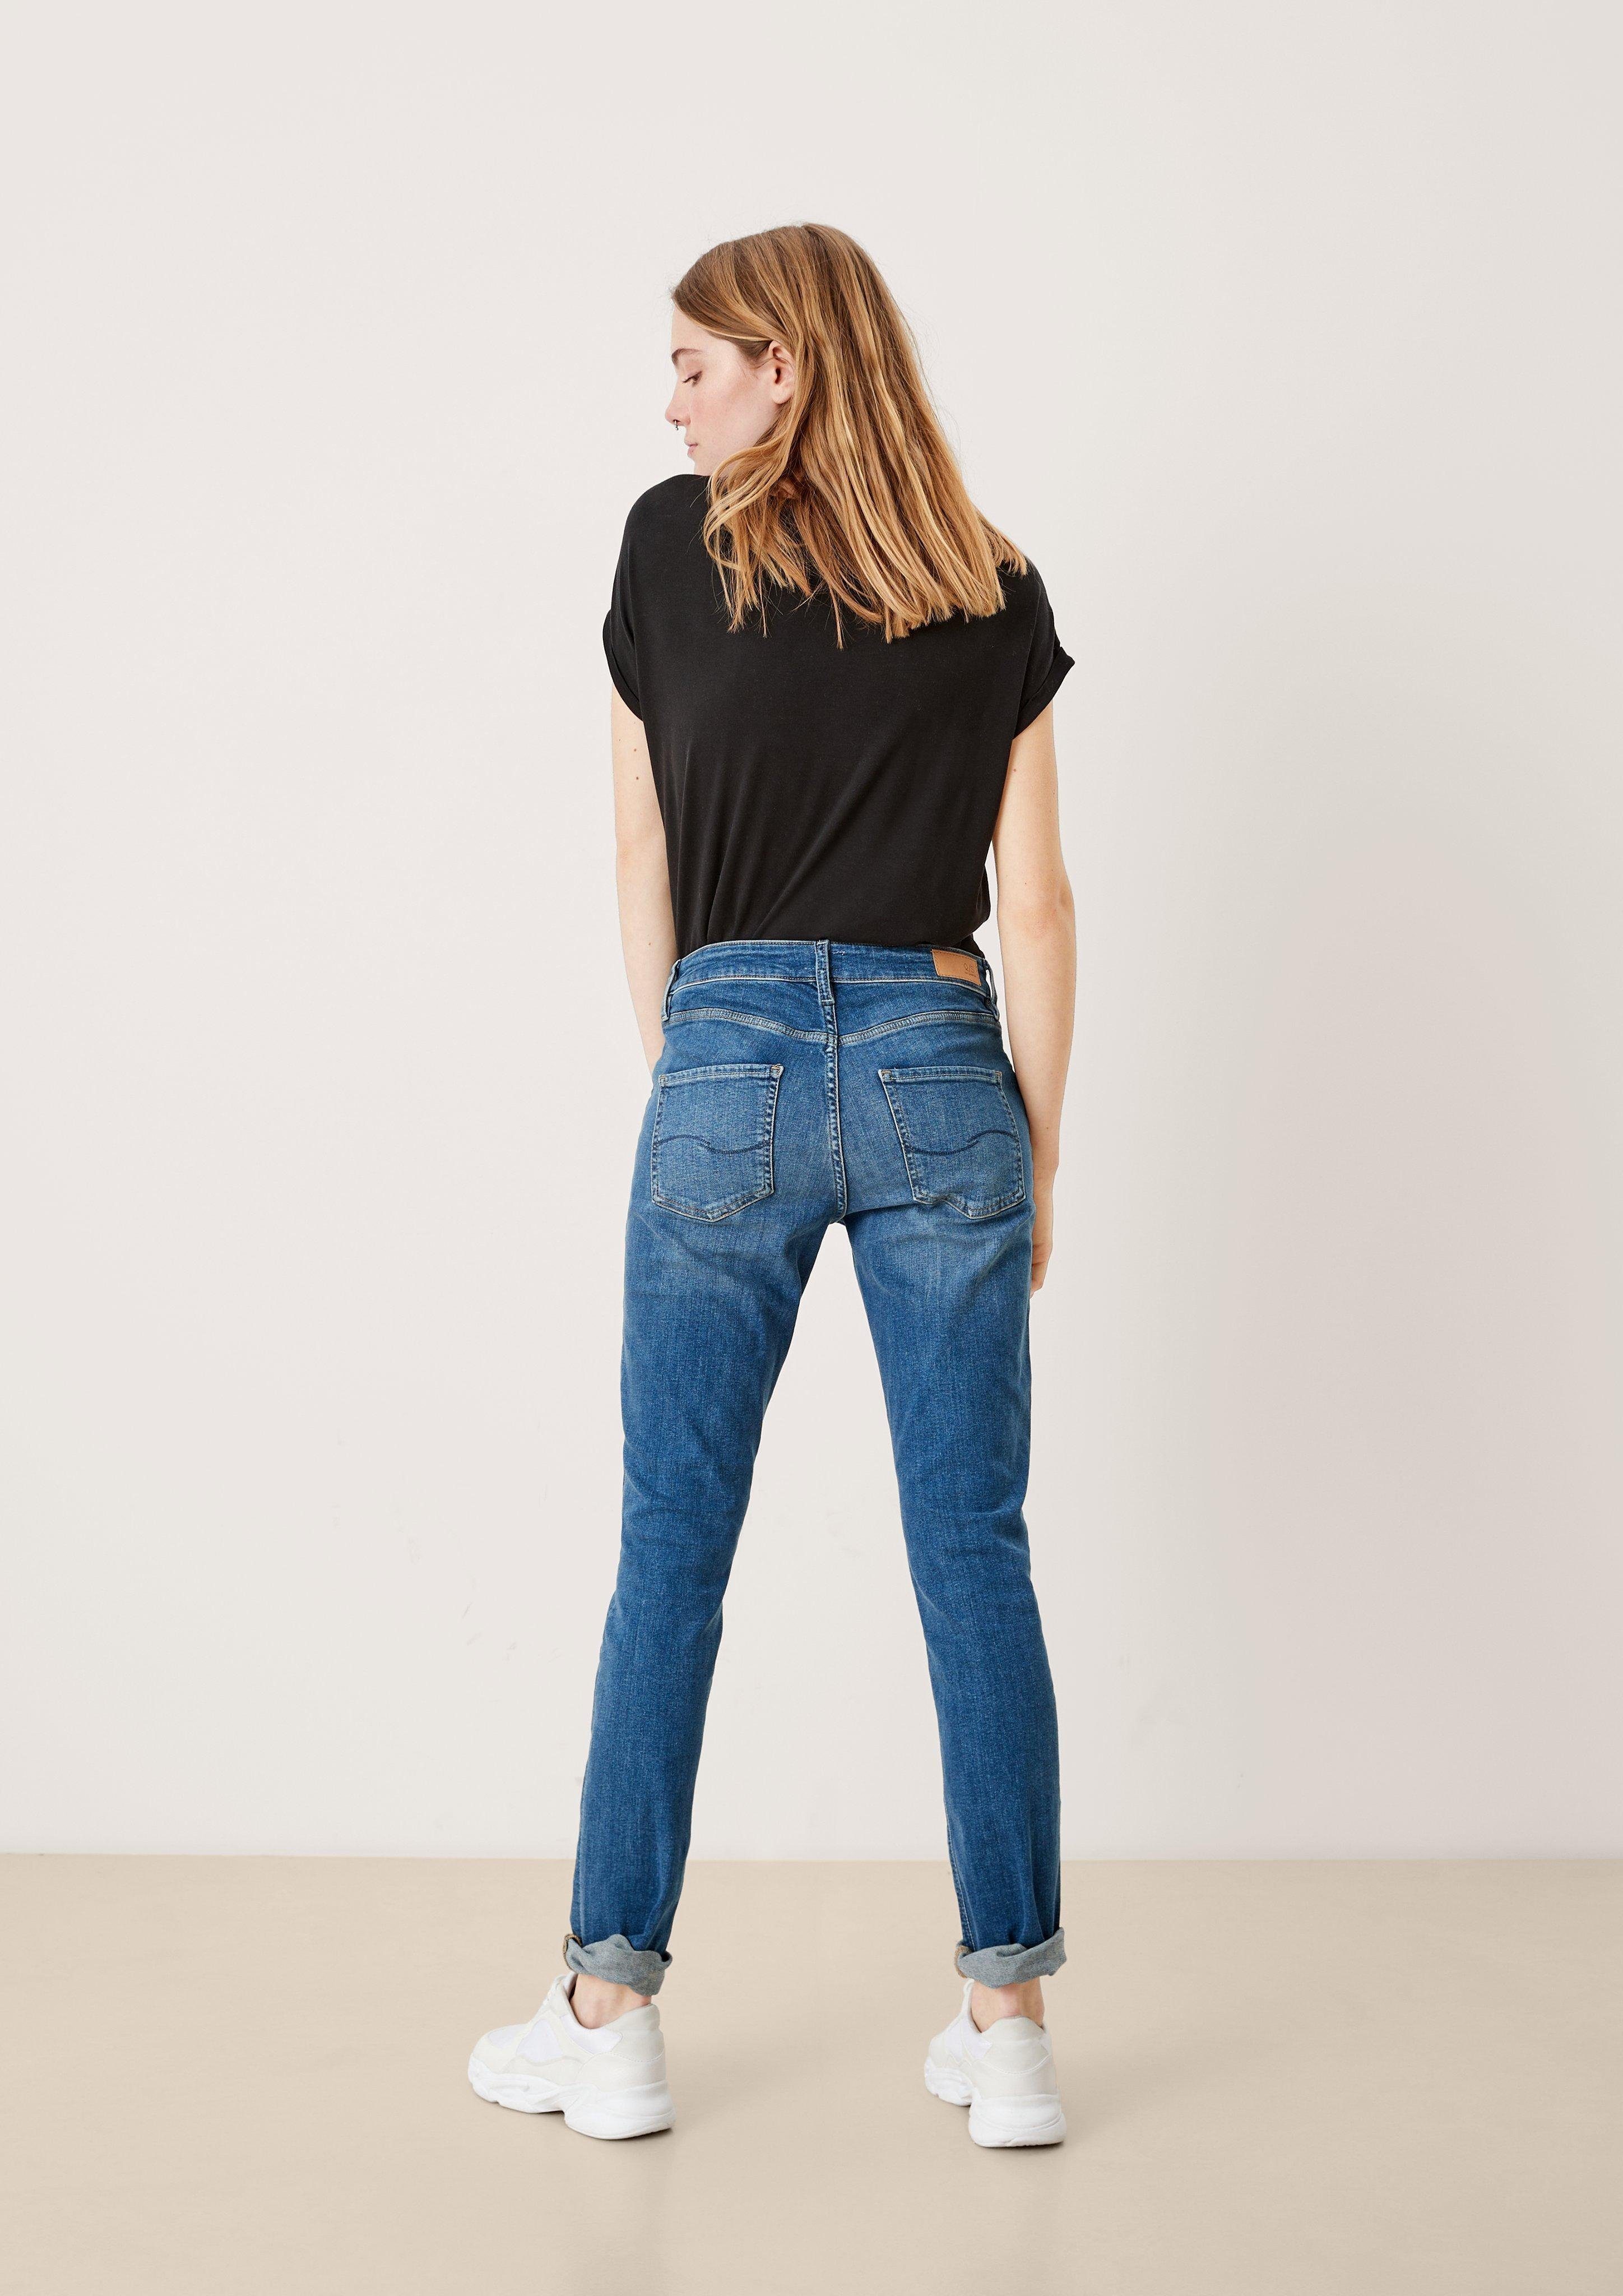 Slim QS / / Stoffhose Slim Leg blue Label-Patch / Jeans Fit Catie Rise Mid